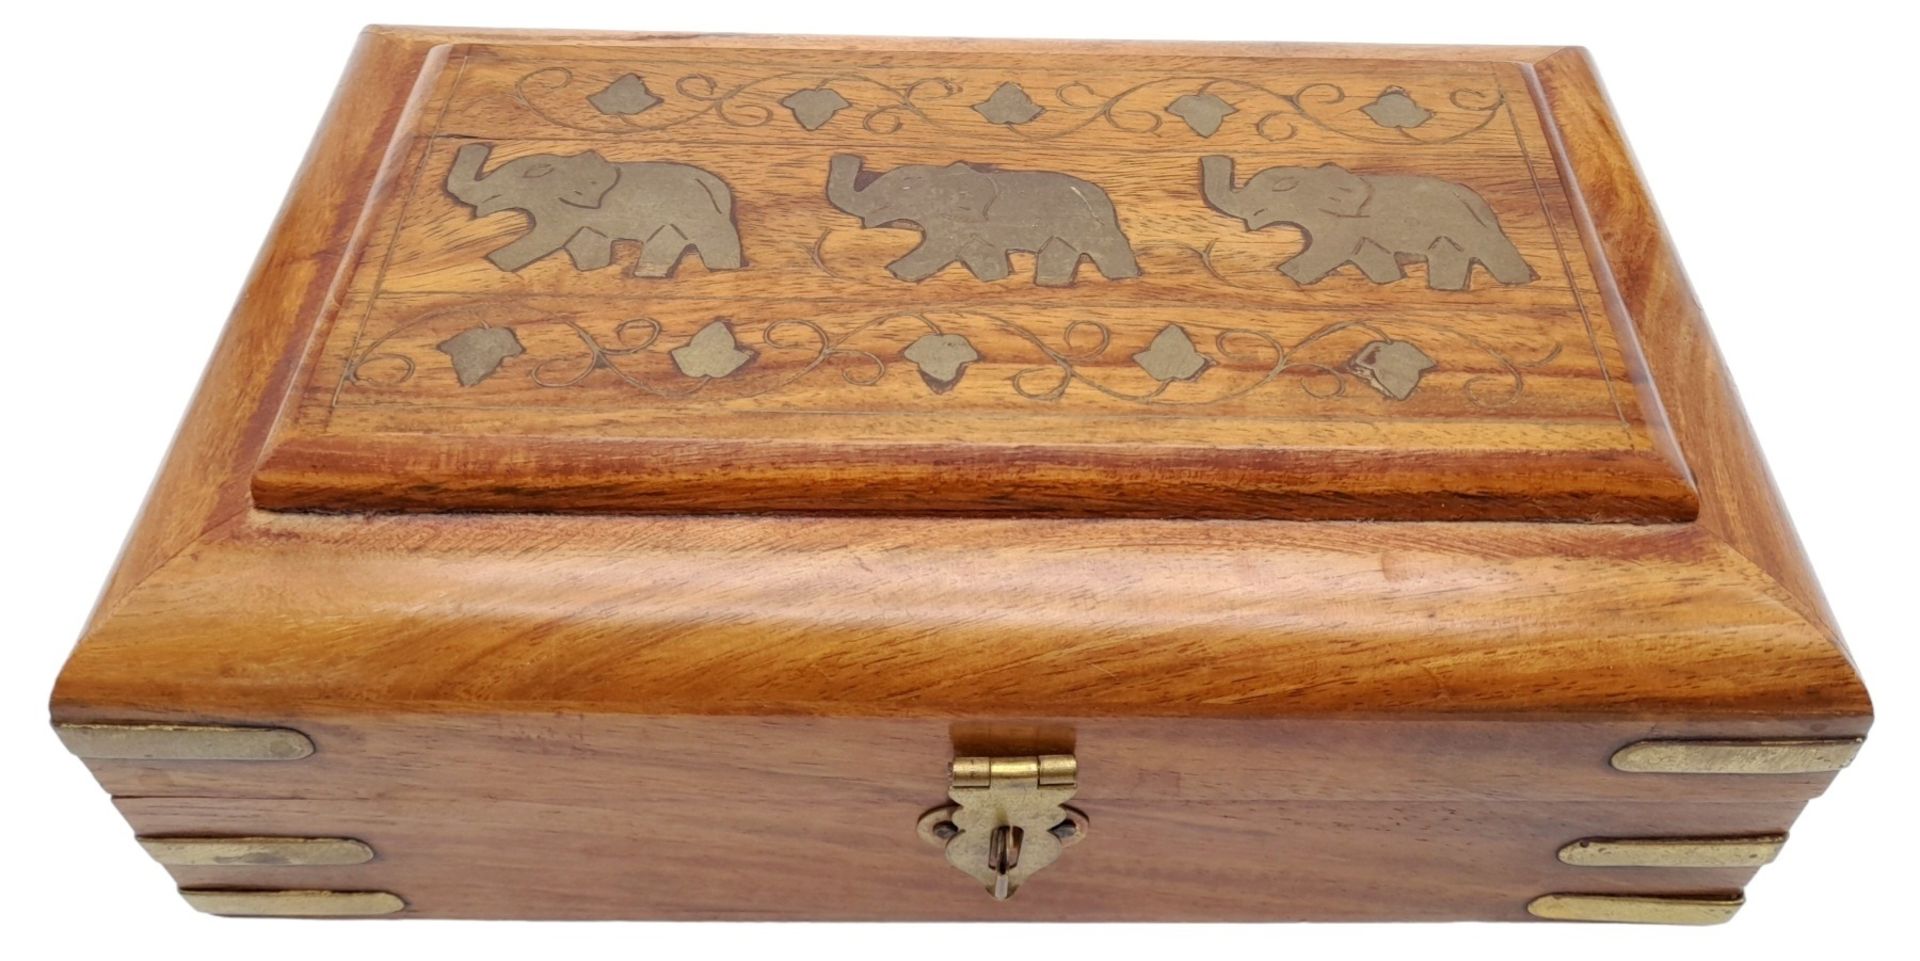 A Wooden Box with an Elephant Motif. Purple textile interior. 20.5cm length x 12.5cm width x 7.5cm